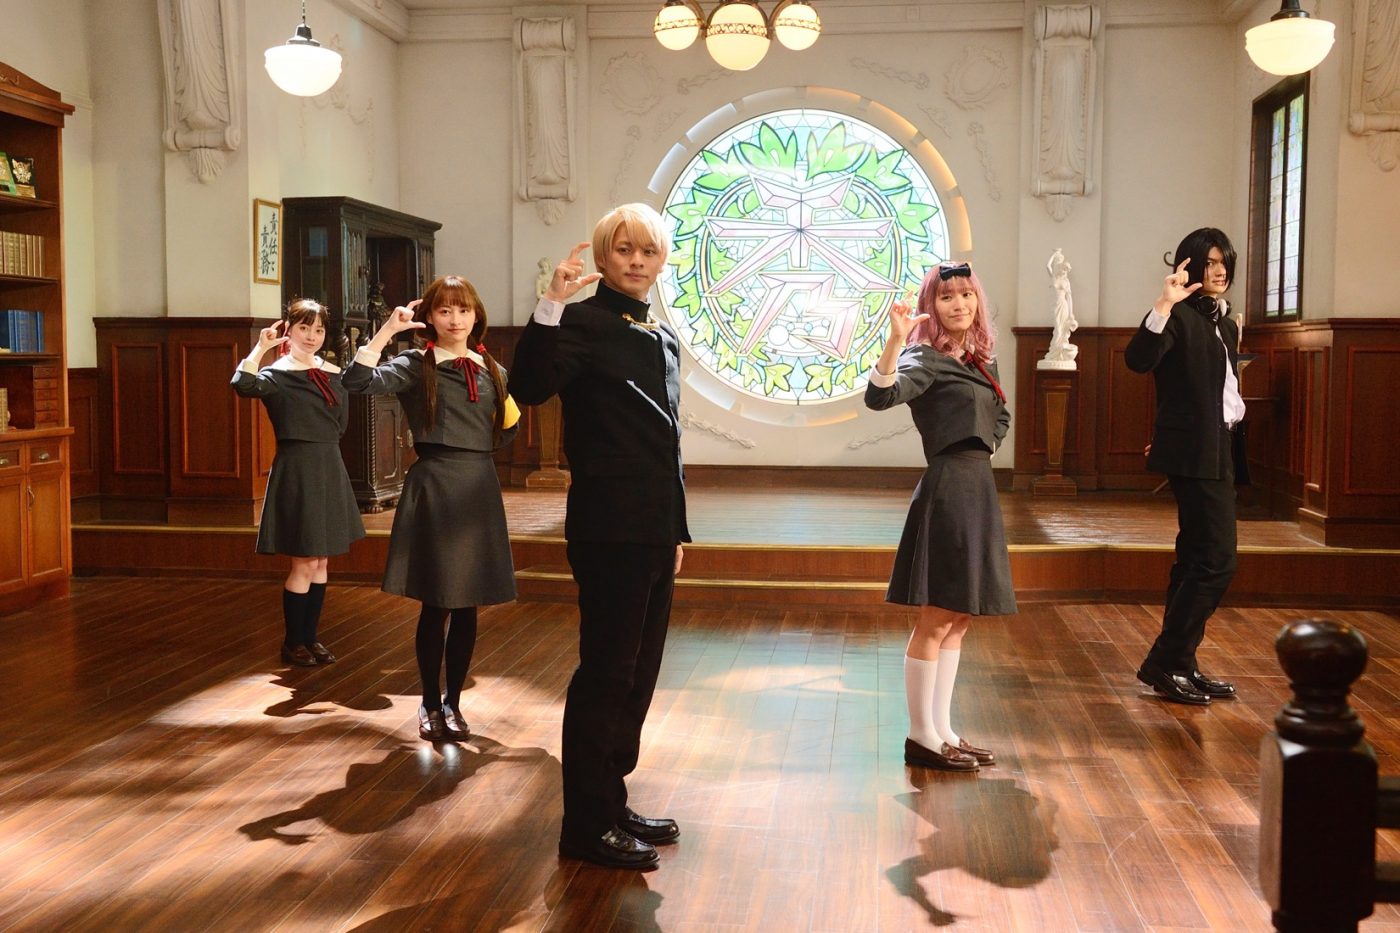 映画『かぐや様』より、平野紫耀率いる生徒会がダンスするエンドロールメイキング映像公開 - 画像一覧（1/1）